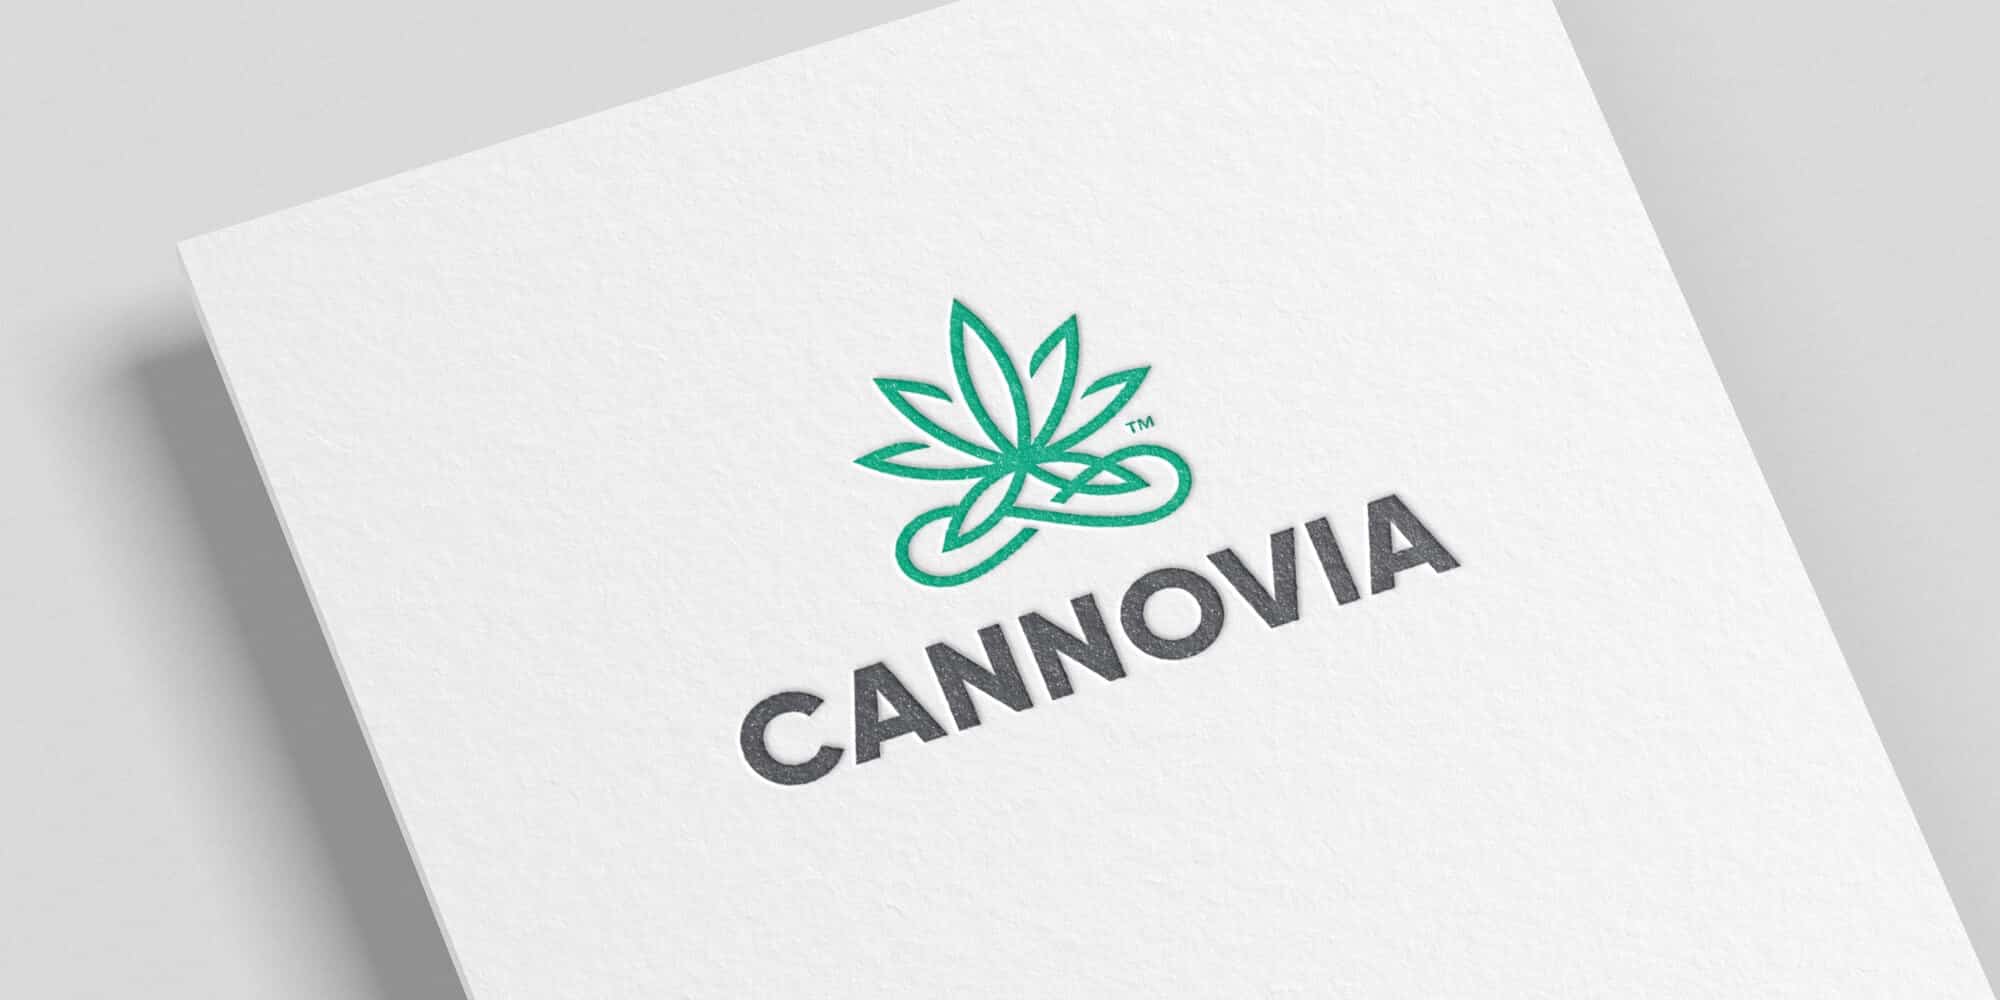 Cannovia brandmark